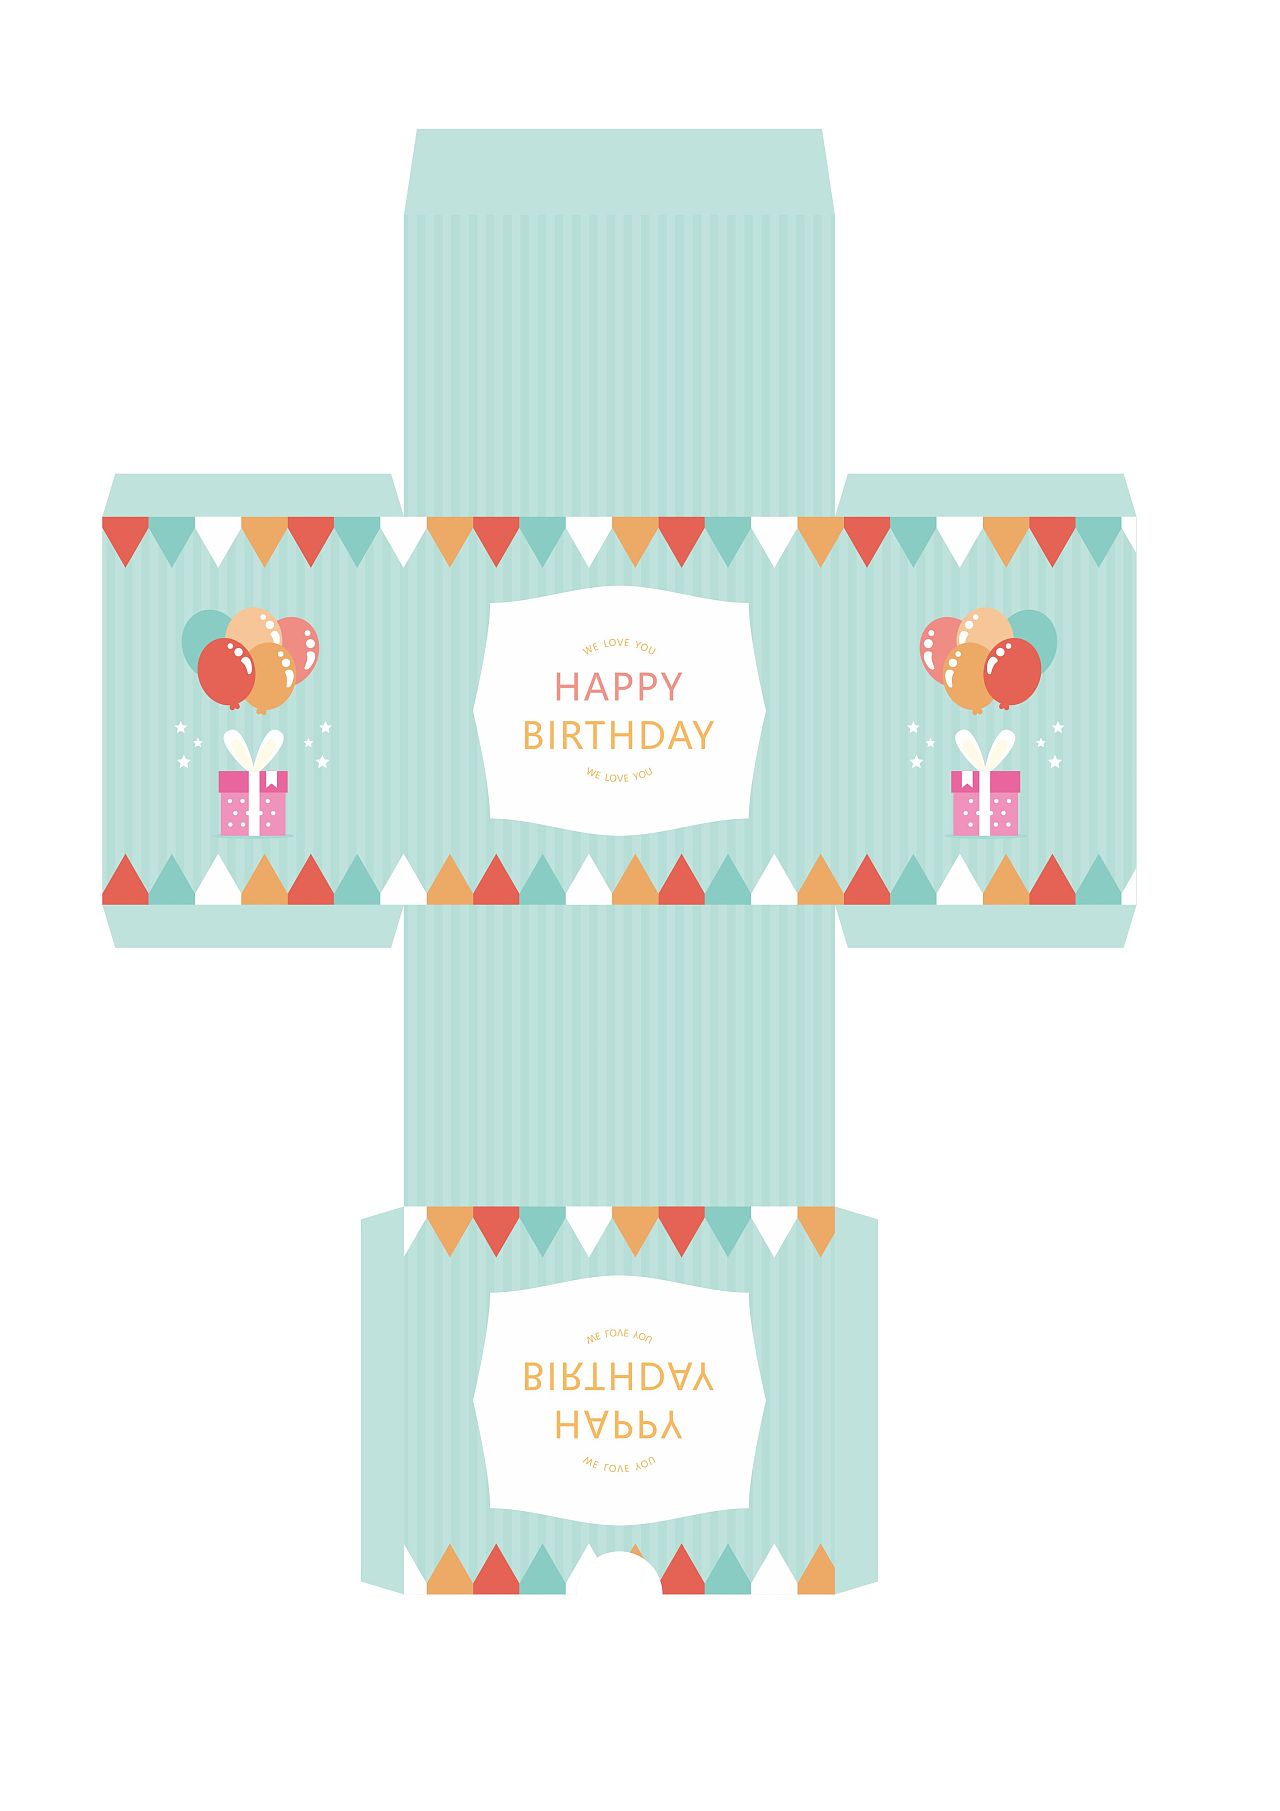 生日蛋糕包装盒设计